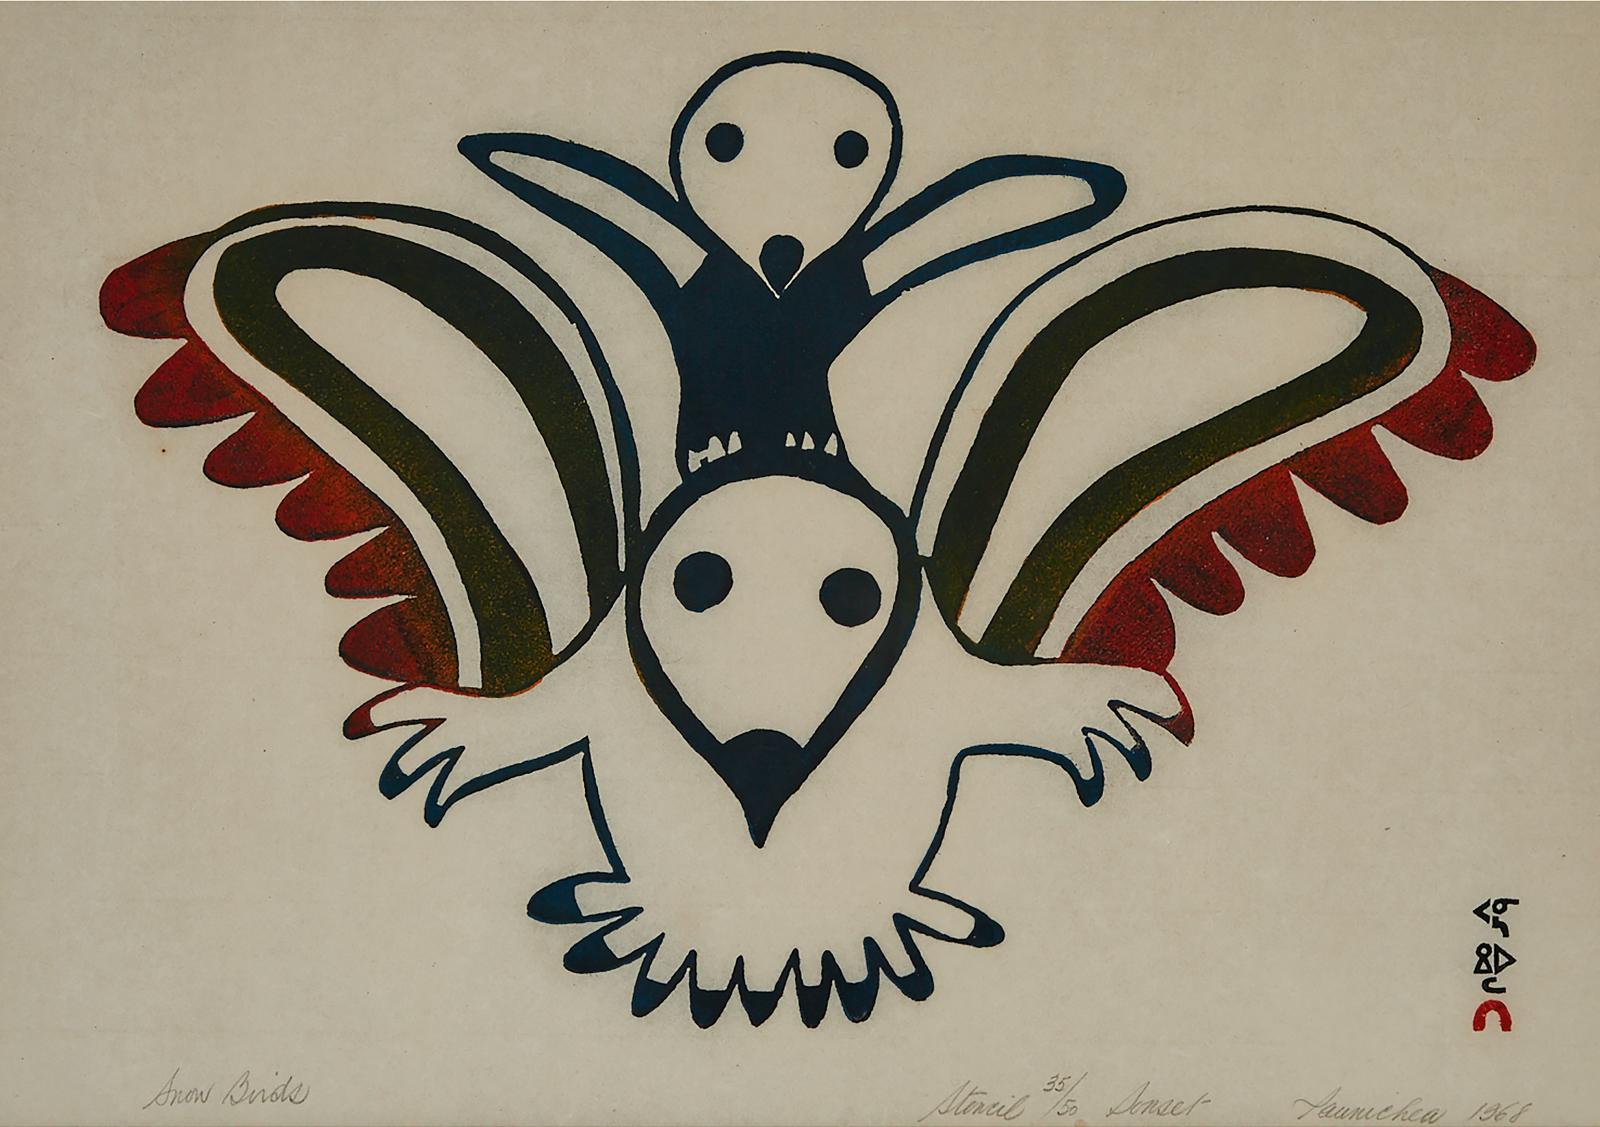 Paunichea (1920-1968) - Snow Birds